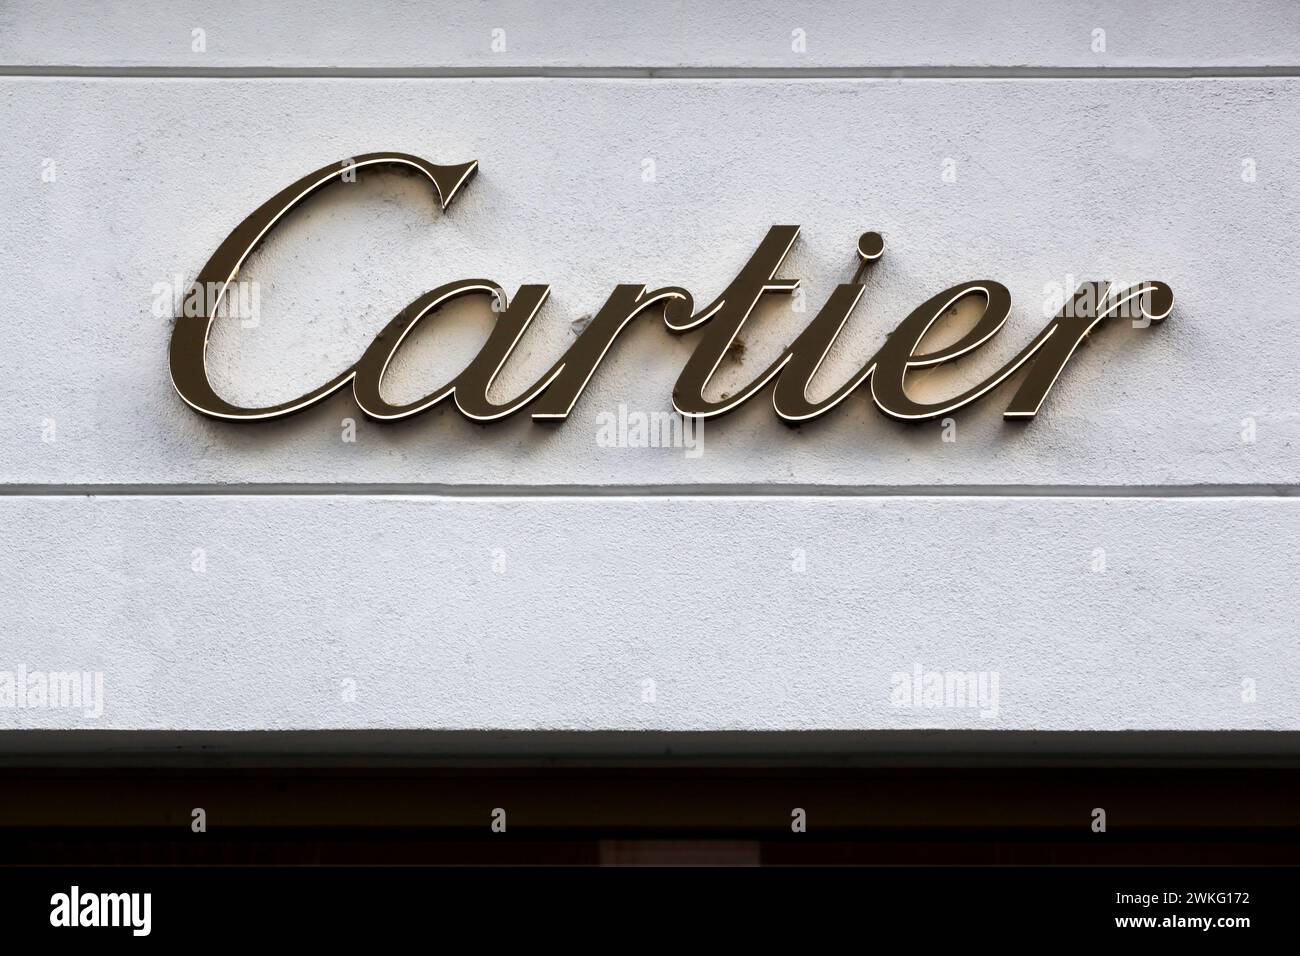 Copenhague, Danemark - 14 octobre 2021 : Cartier est un conglomérat français de produits de luxe Banque D'Images